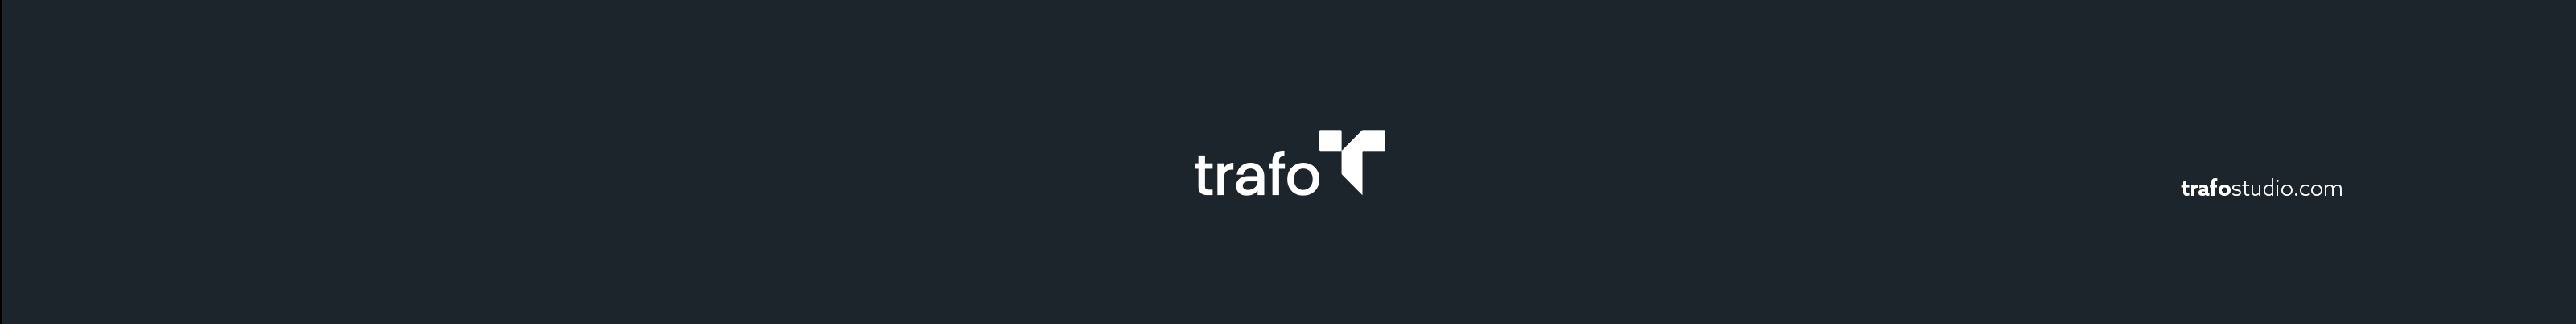 Trafo Studios profilbanner